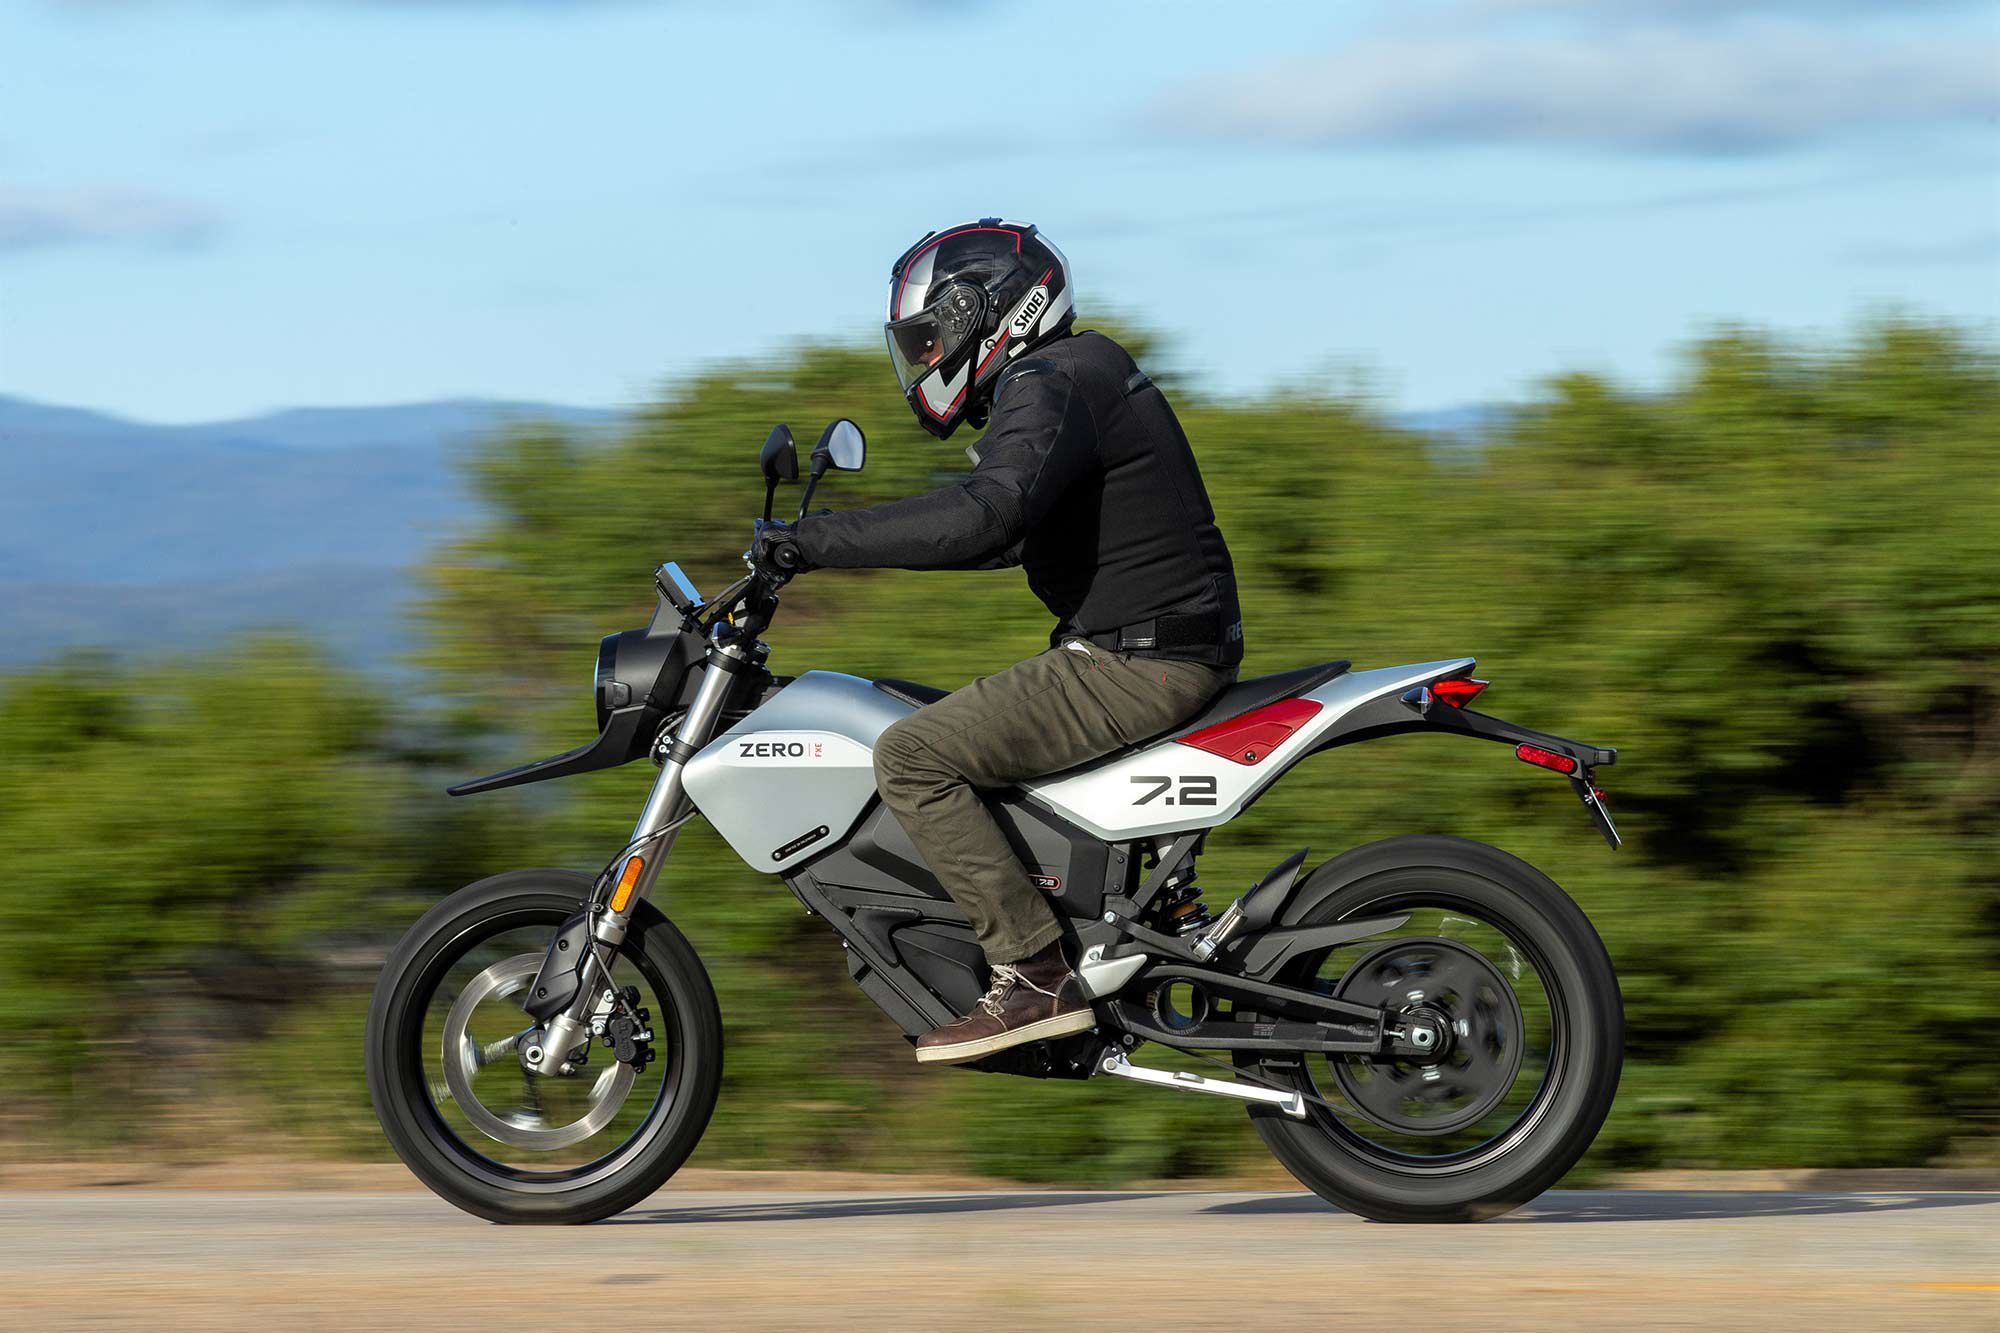 Zero's FXE Motorcycle